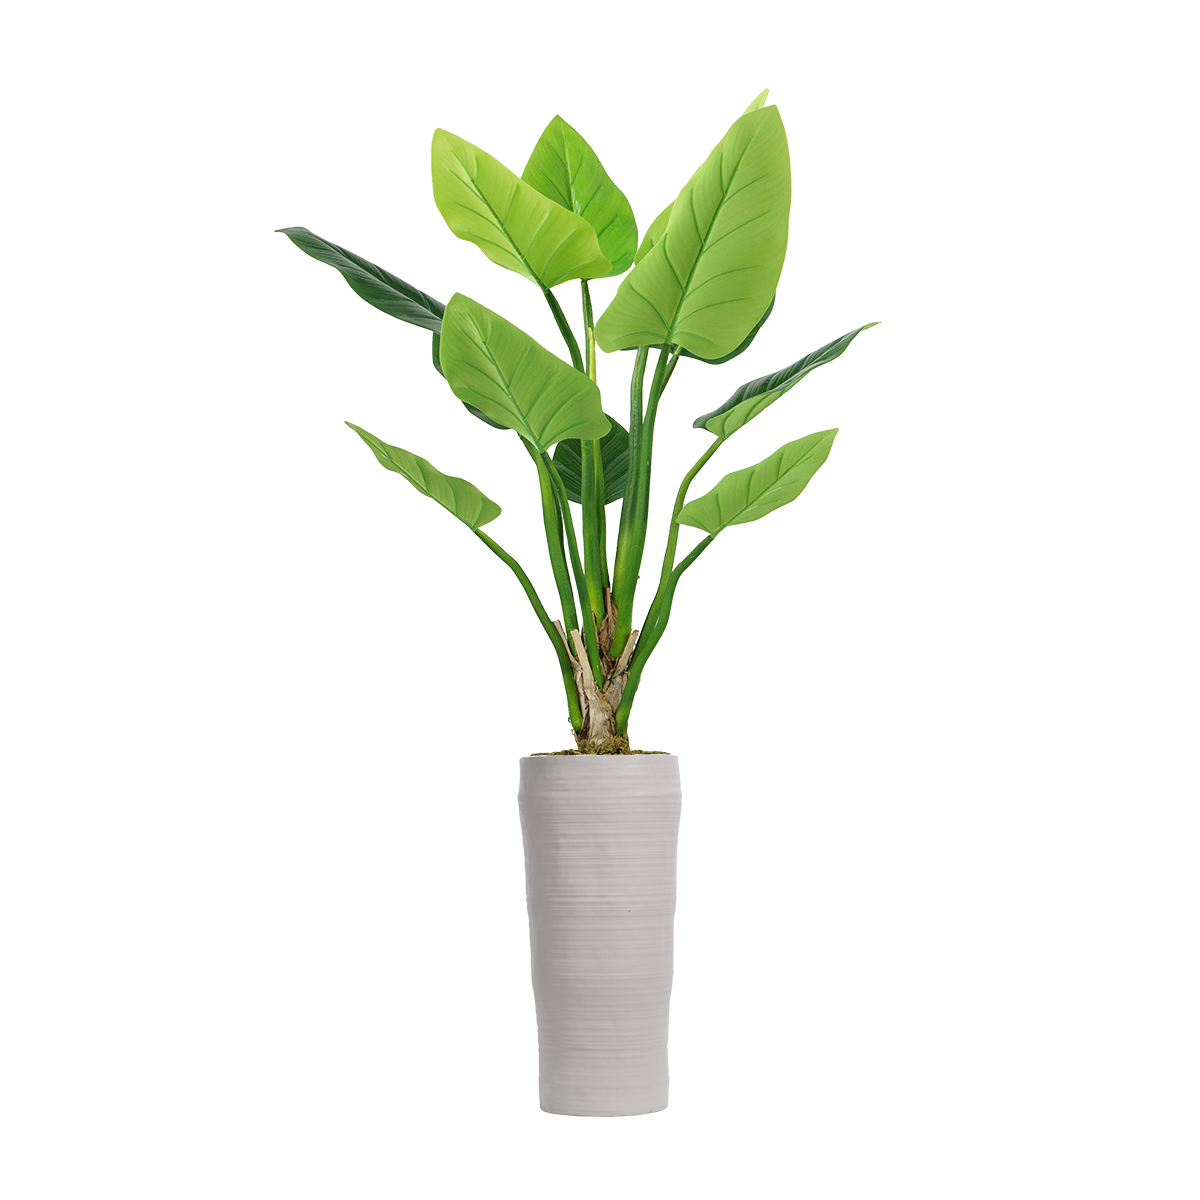 Vhx136218 54.5 In. Philodendron Erubescens Green Emerald Plant In Fiberstone Planter